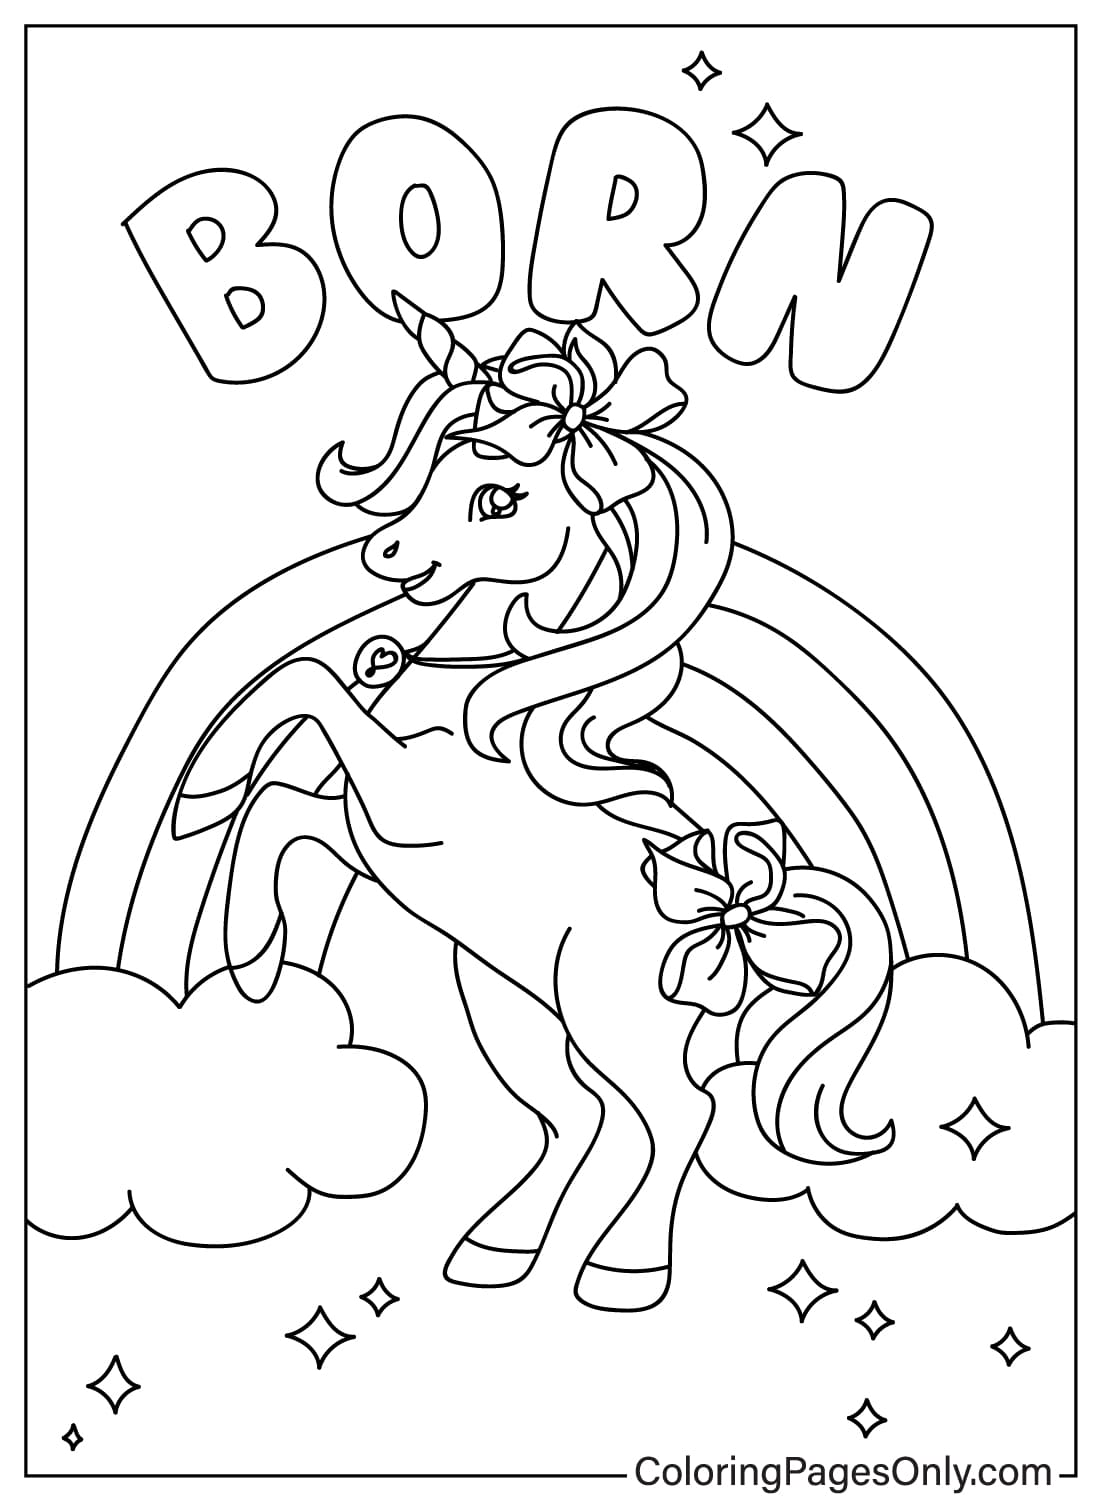 Página para colorear de Unicornio Jojo Siwa de Jojo Siwa